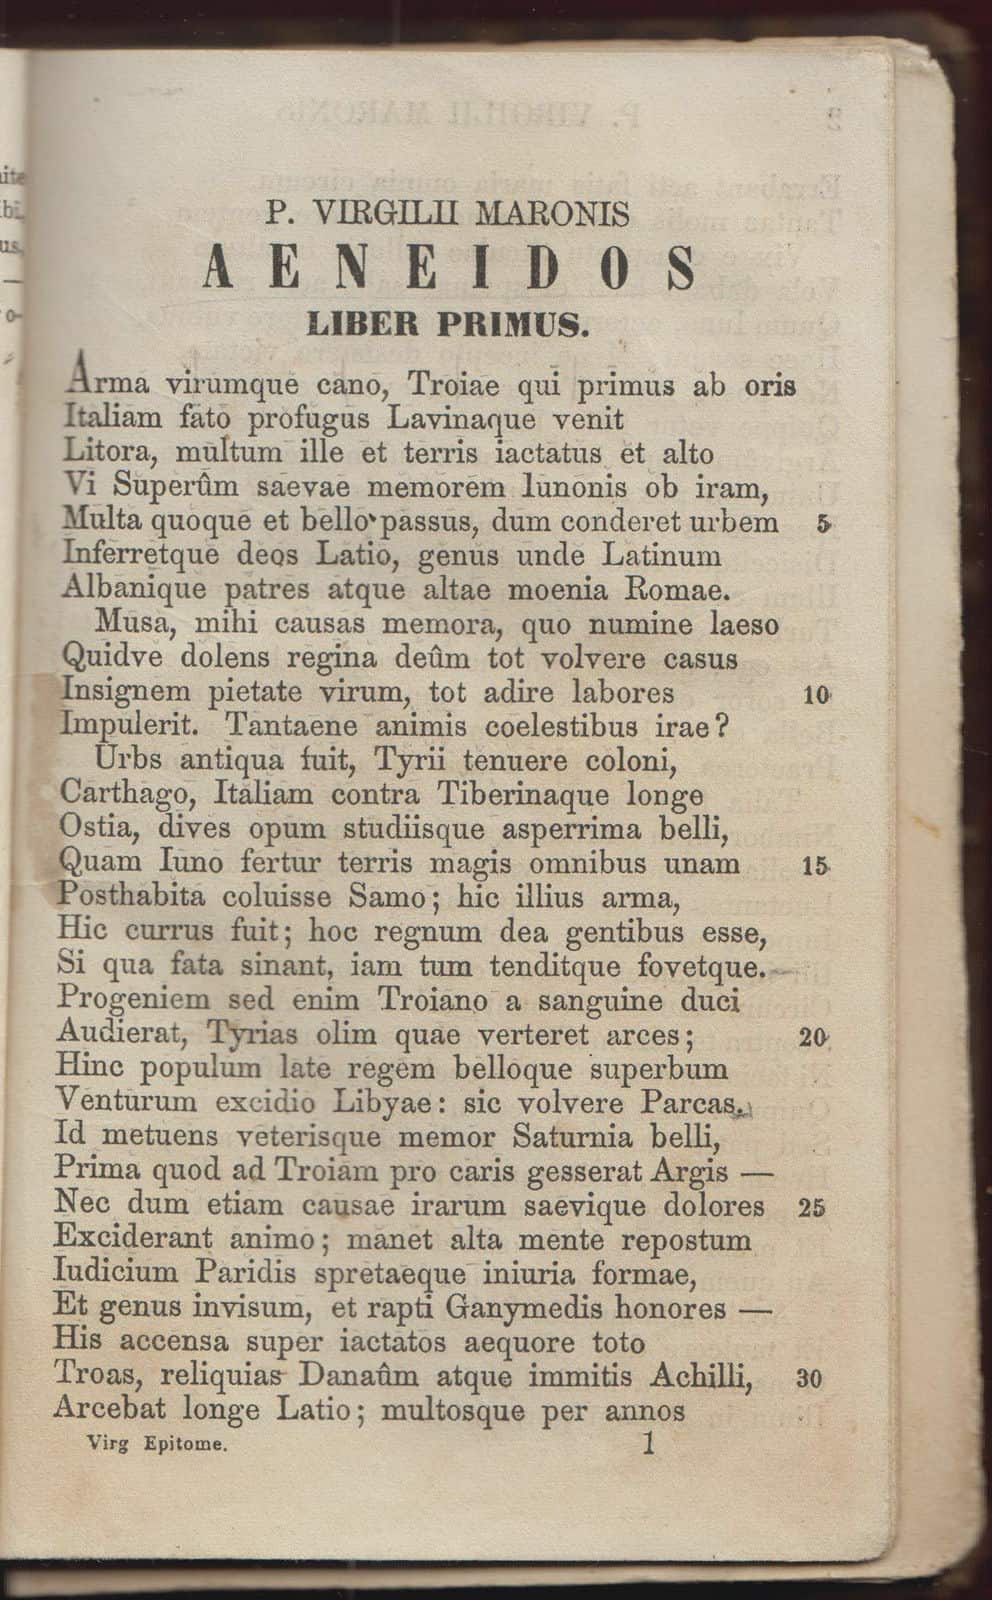 Virgil - Poems, Books & Aeneid